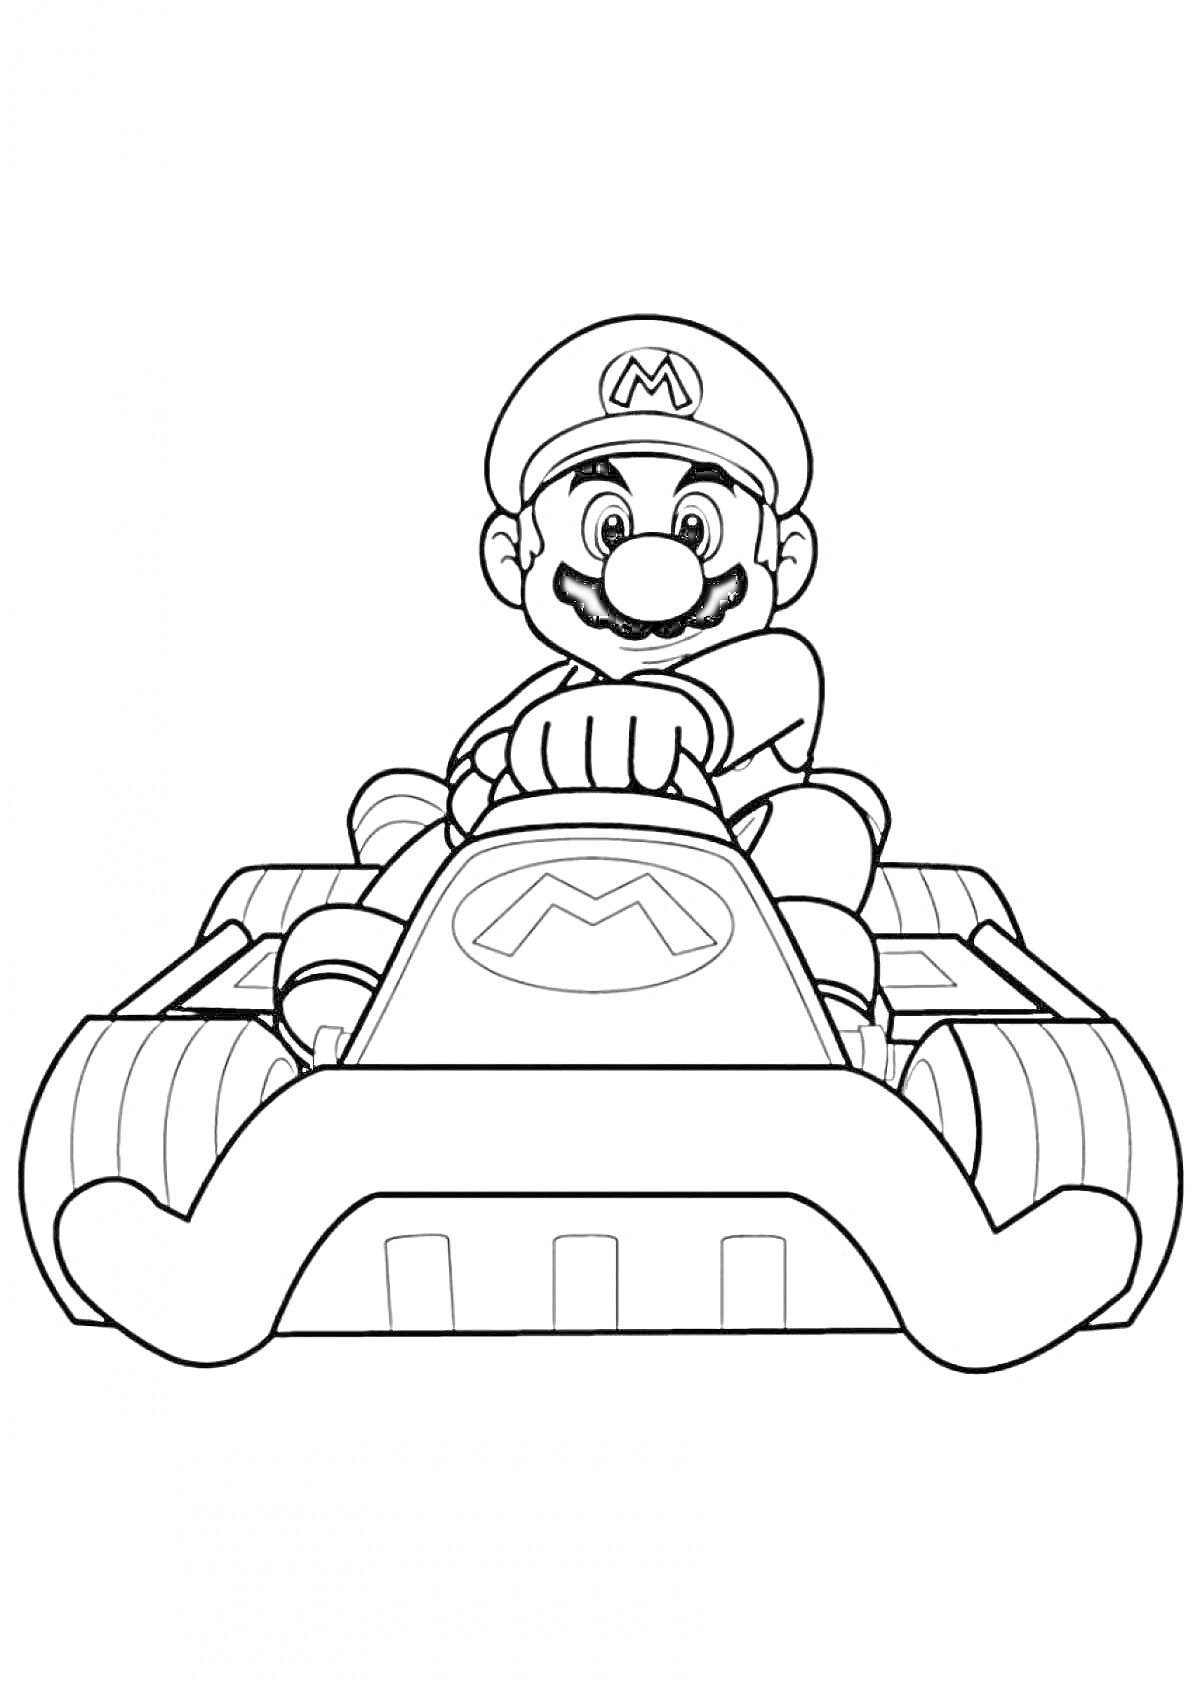 Раскраска Марио на картинге